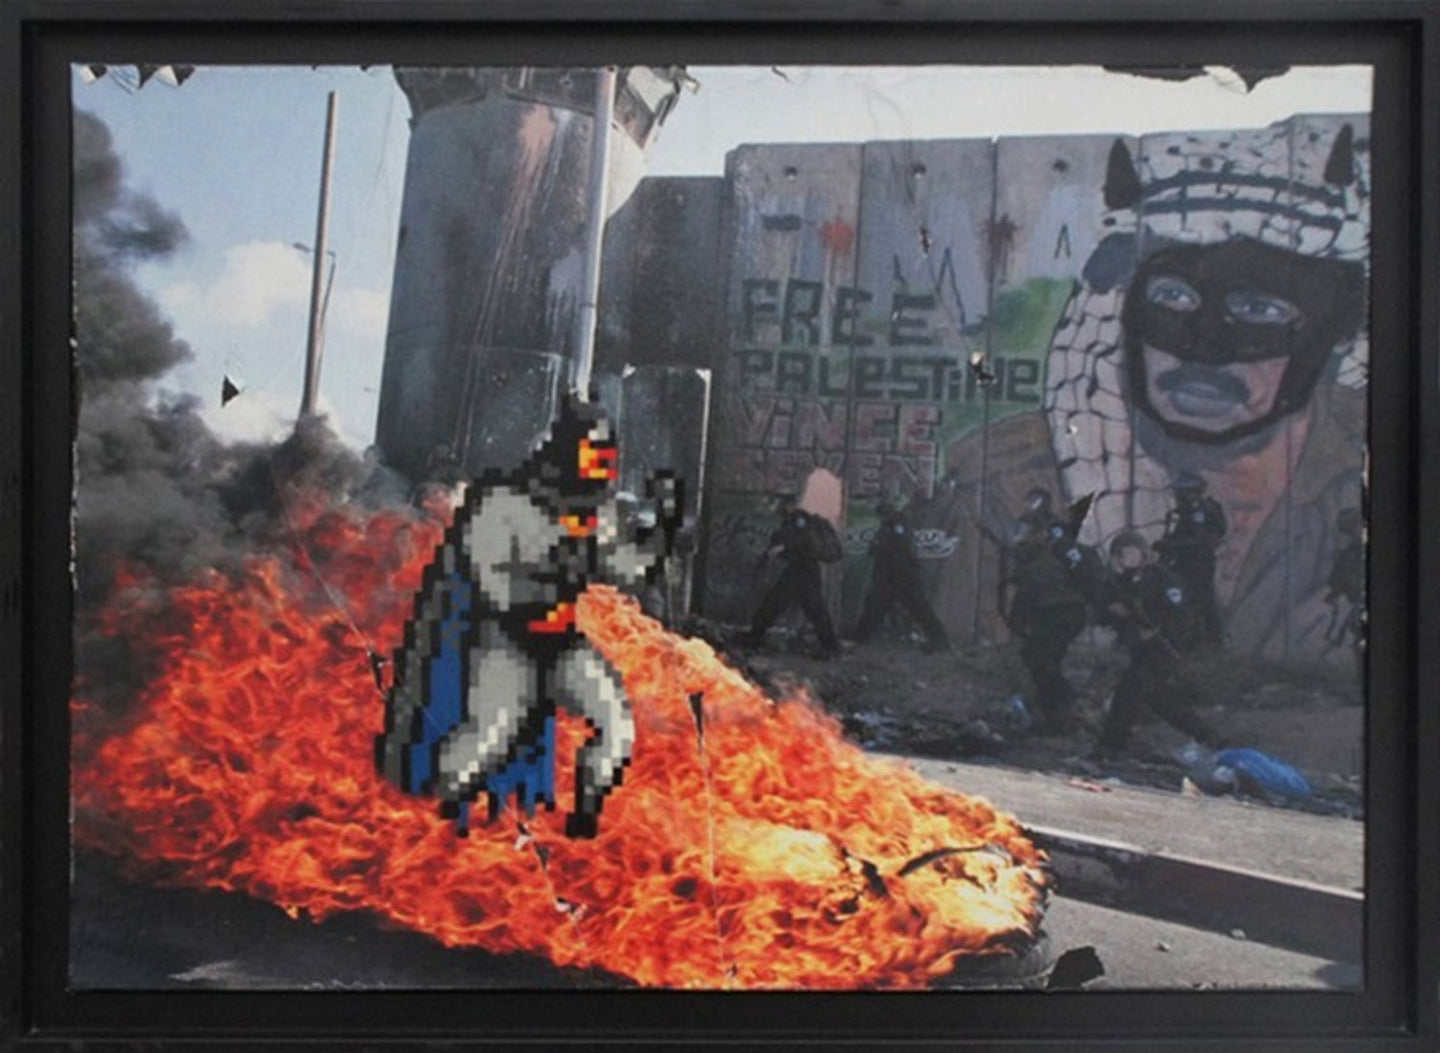 Batman Free Palestine